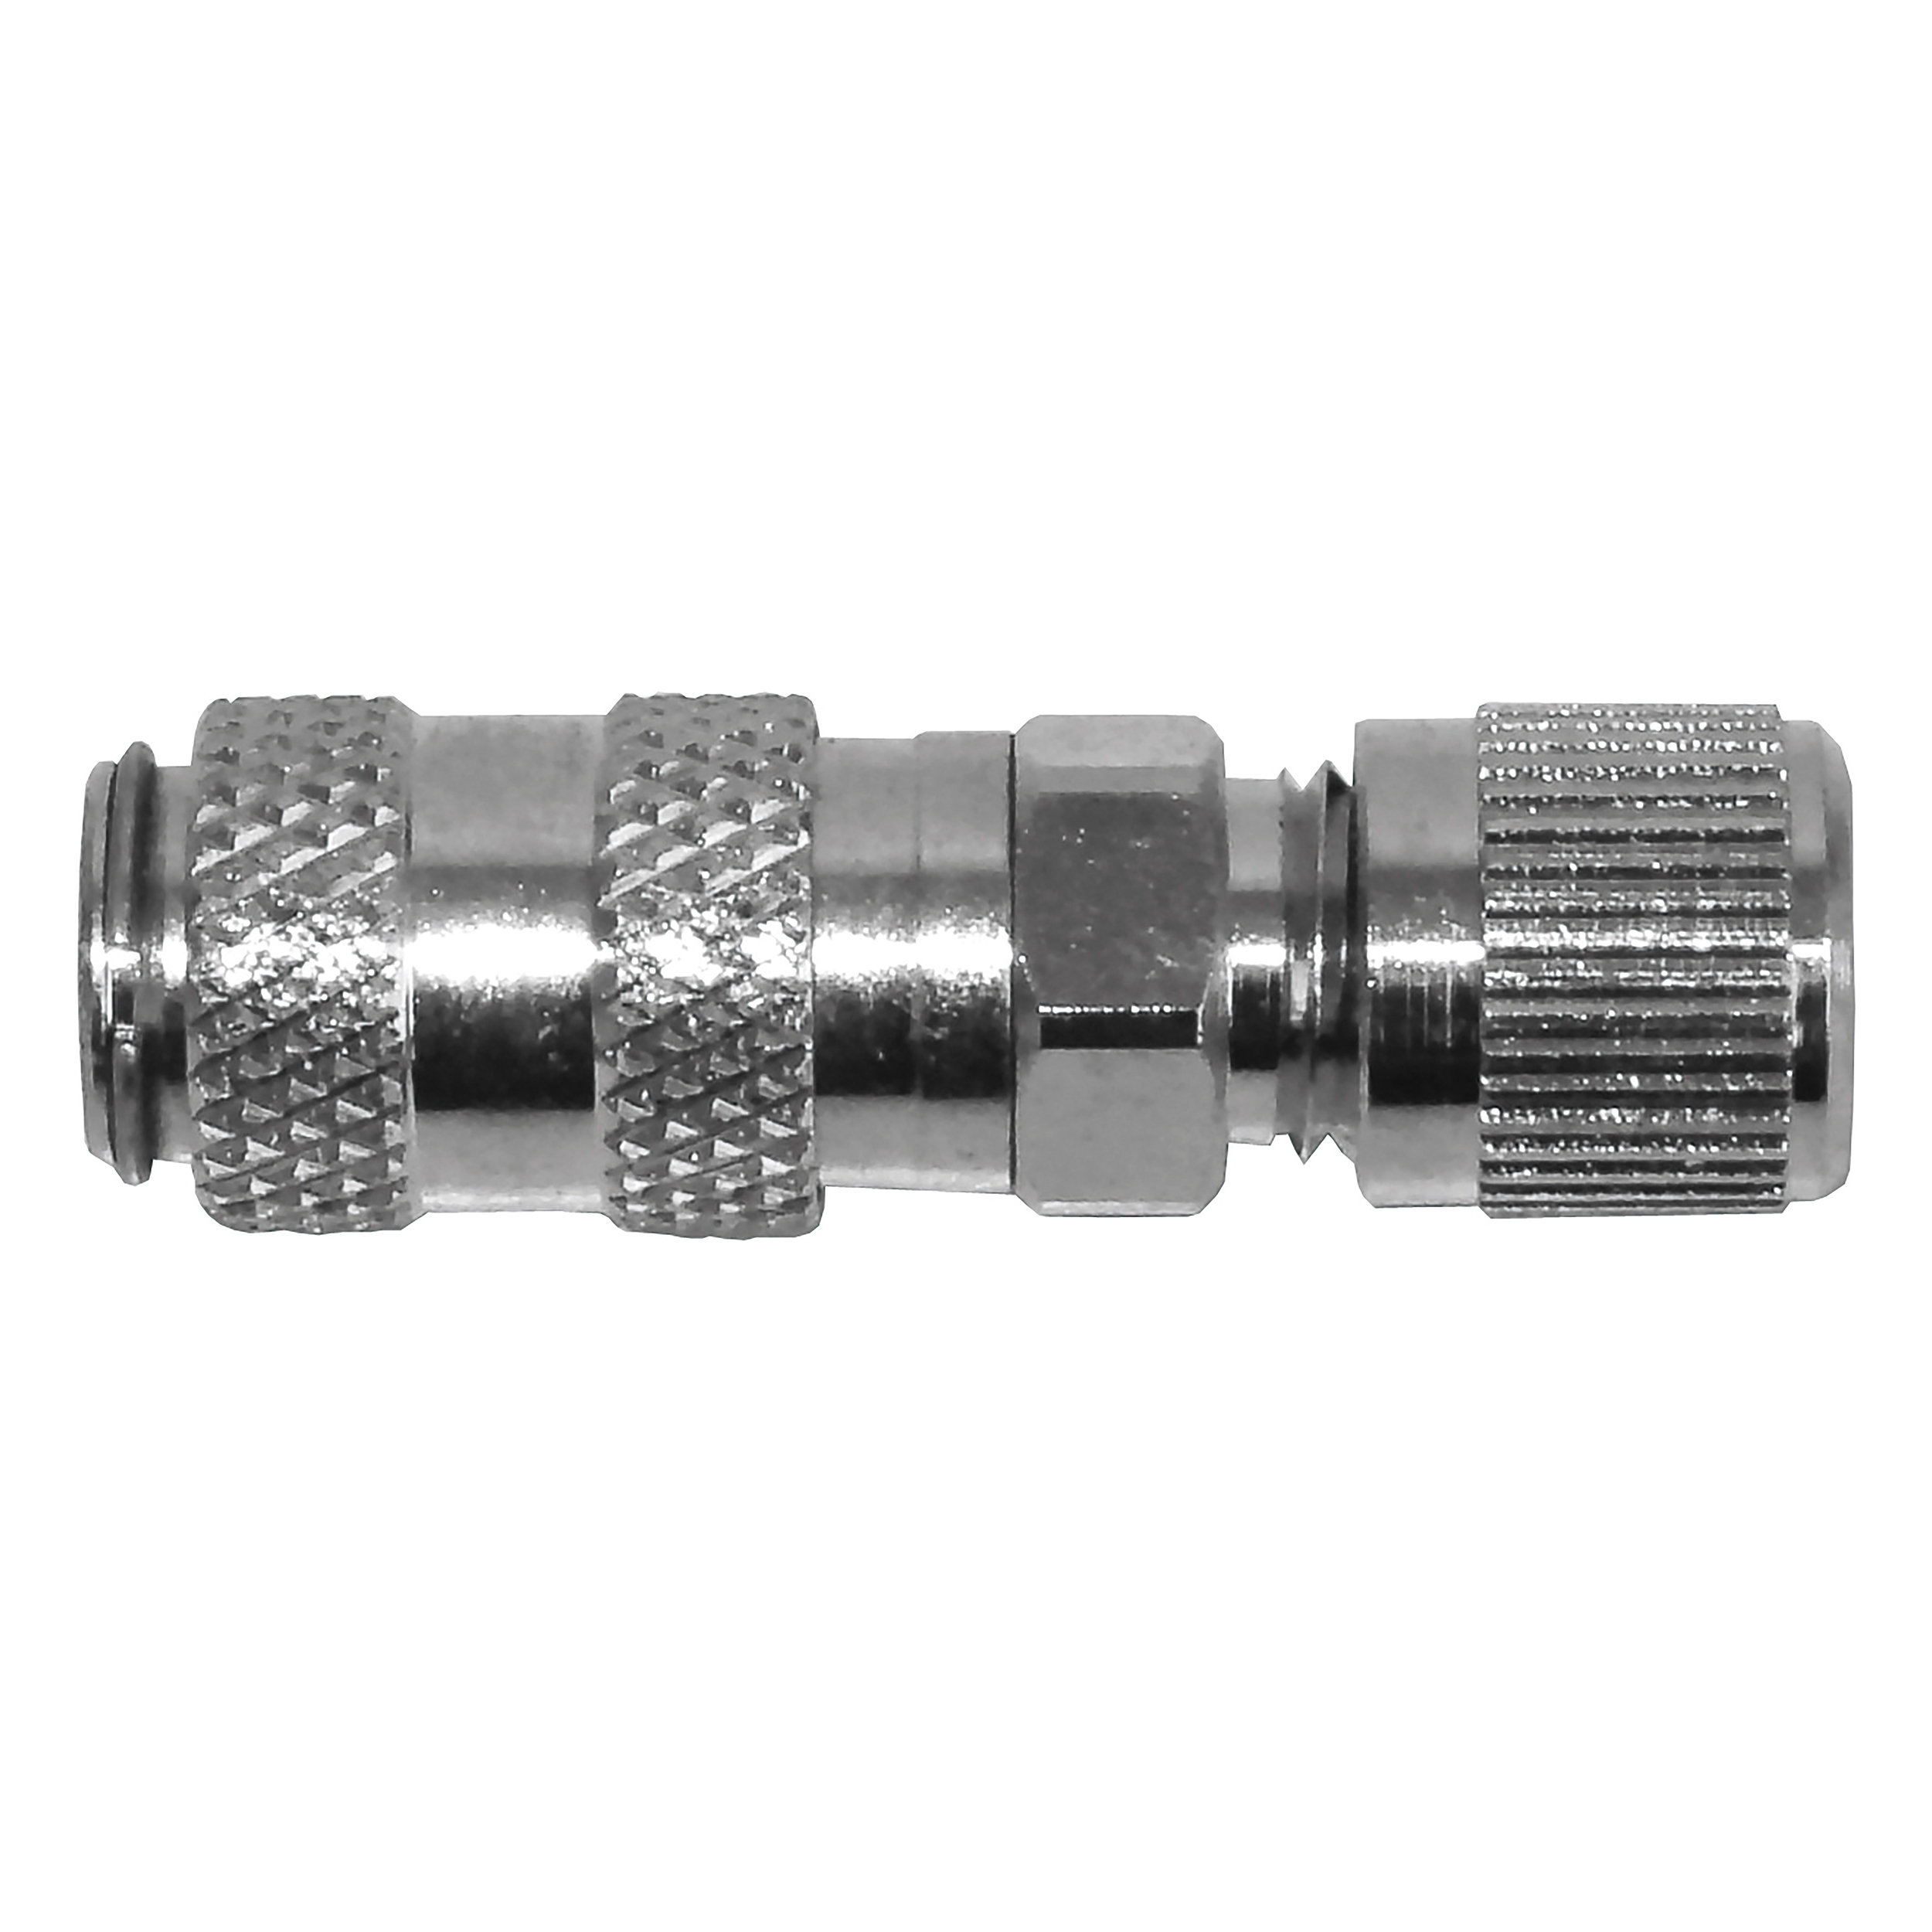 DN 5 mini-coupling, QN (87 psi pre-press. / ∆p = 14.5 psi): 500 Nl/min, MOP: 232 psi, screw connection 6×4 M10×1, L: 43 mm, AF 14